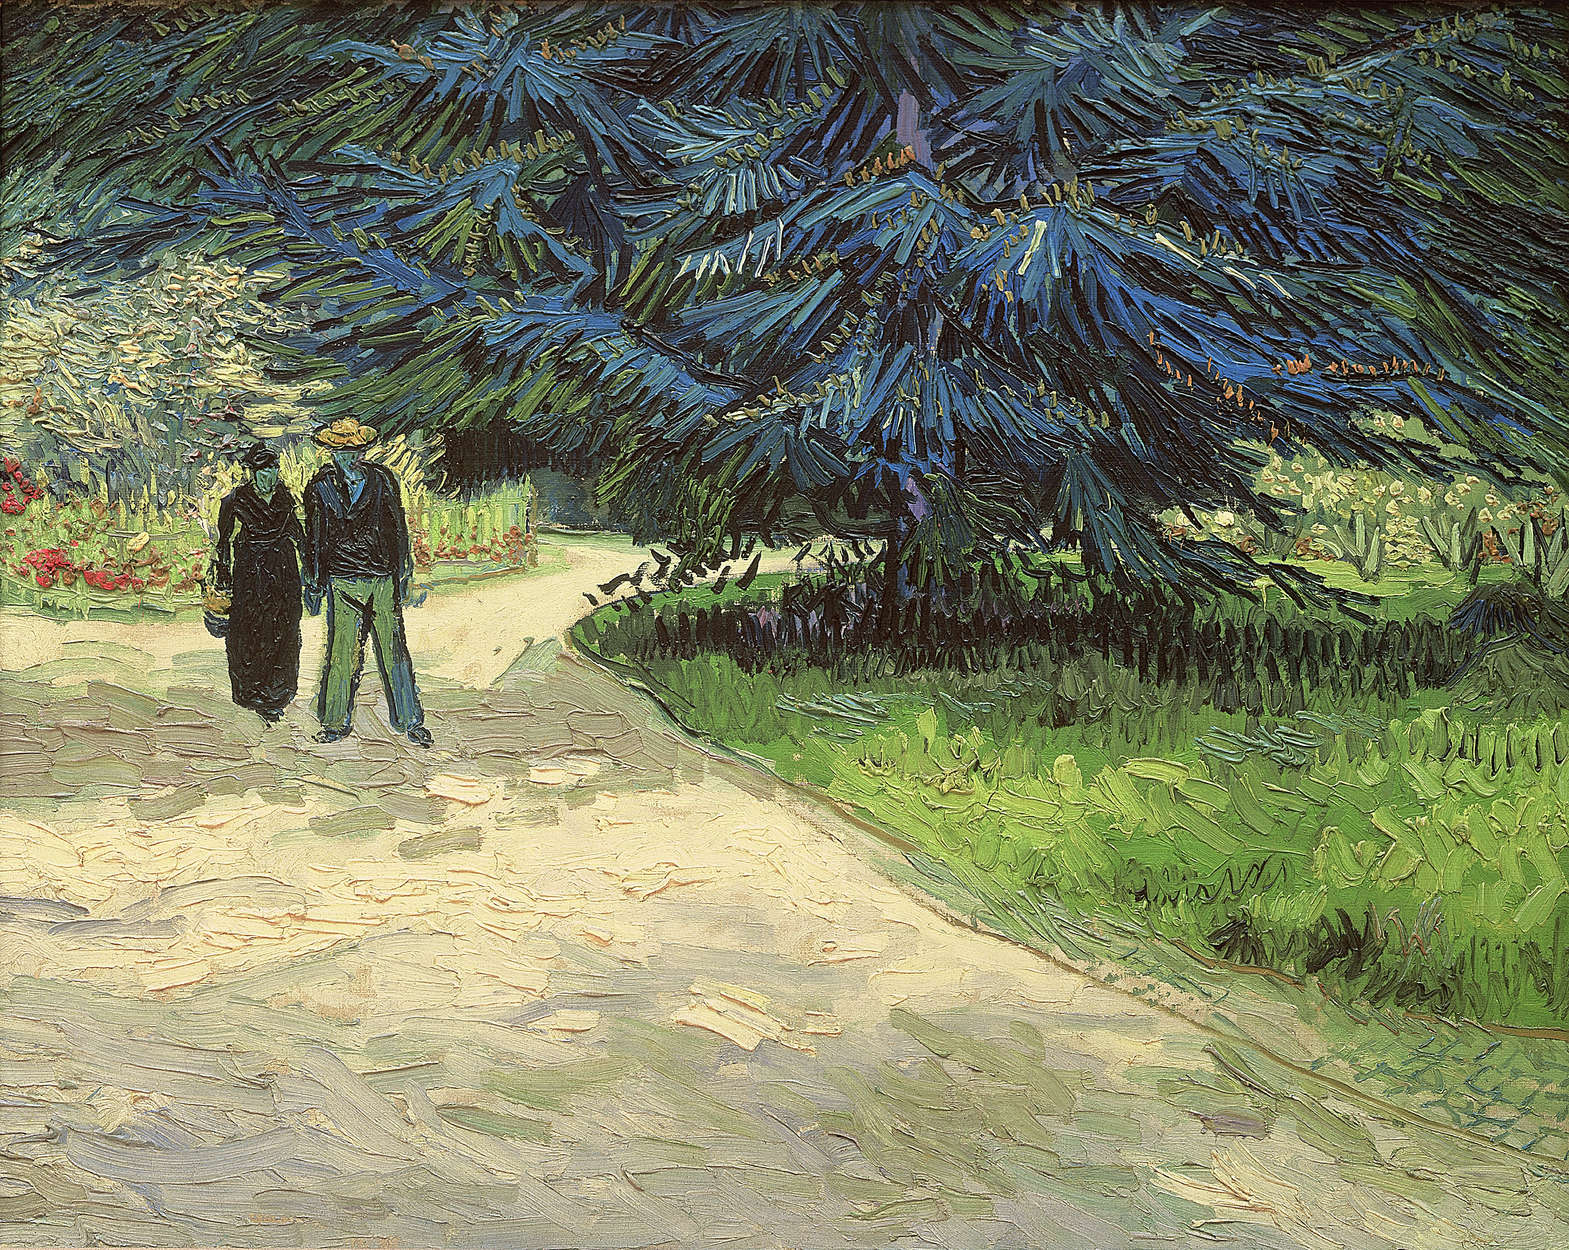             Mural de Vincent van Gogh "Un claro en un parque"
        